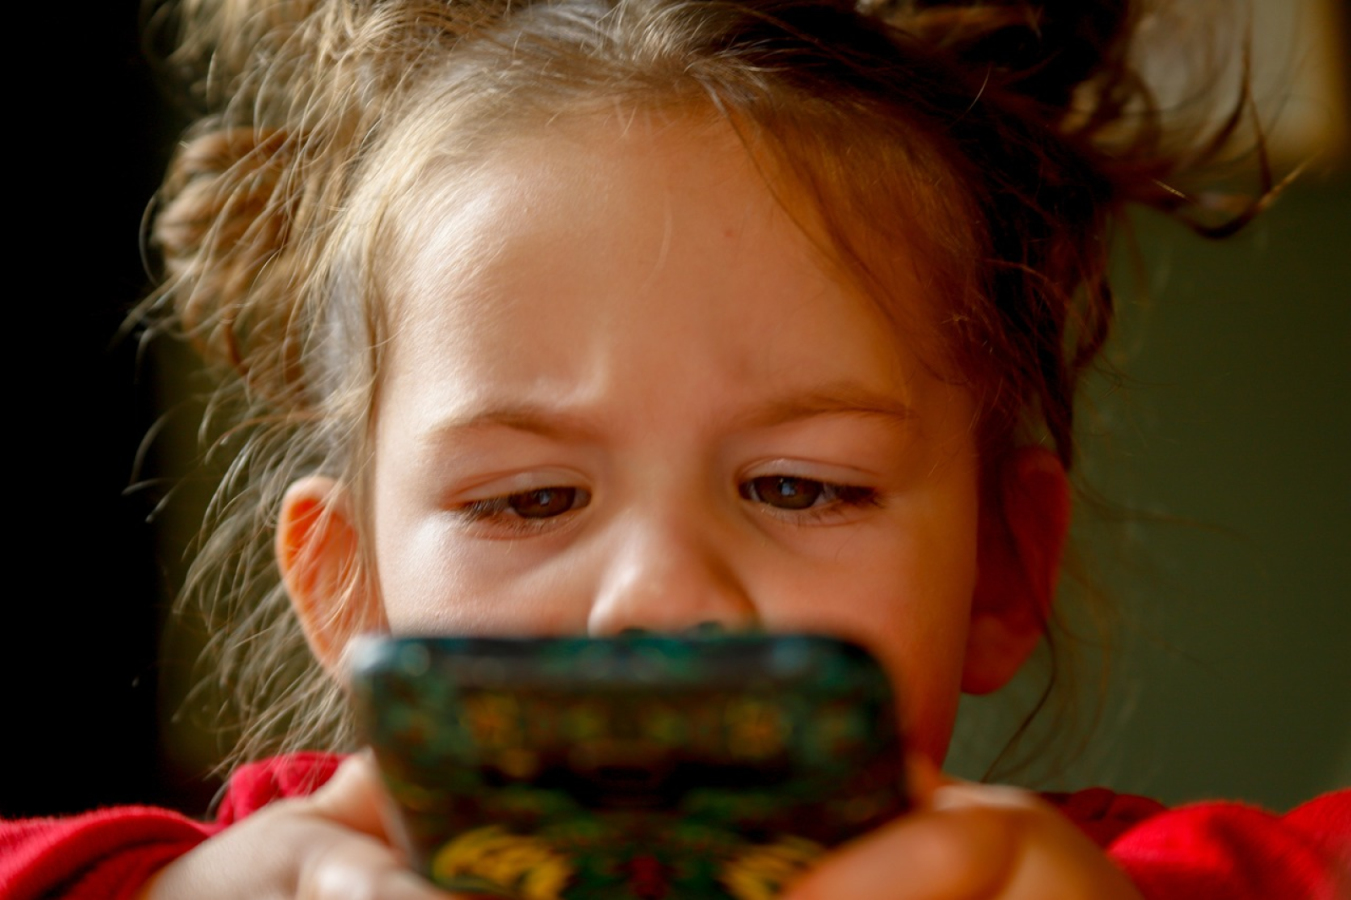 Dziecko a telefon komórkowy. Dlaczego smartfon szkodzi?